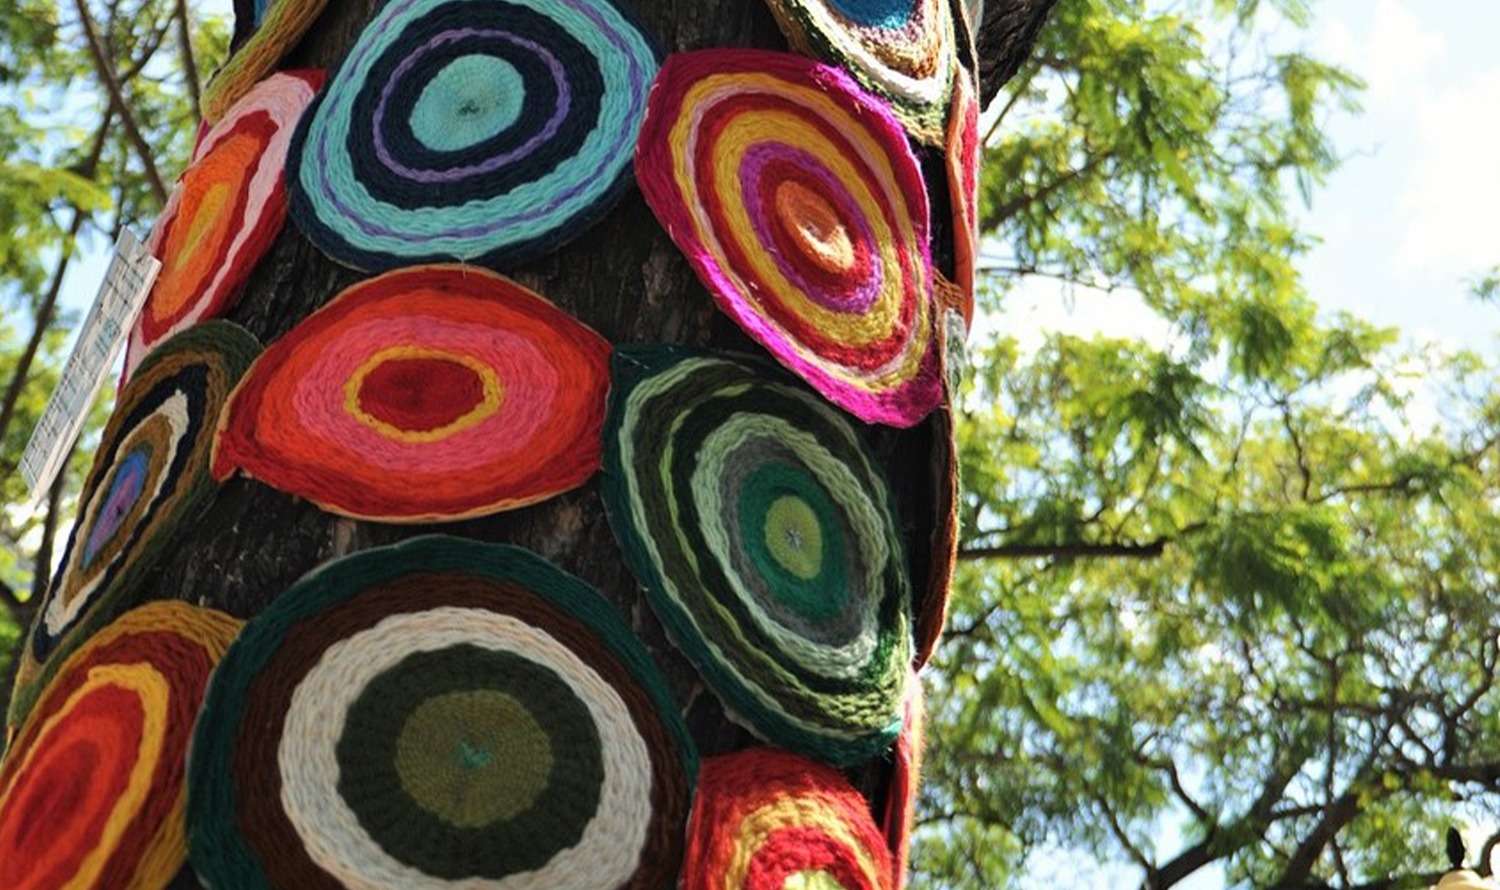 De nombreux coussins de siège ronds faits maison et colorés sont suspendus à un arbre.